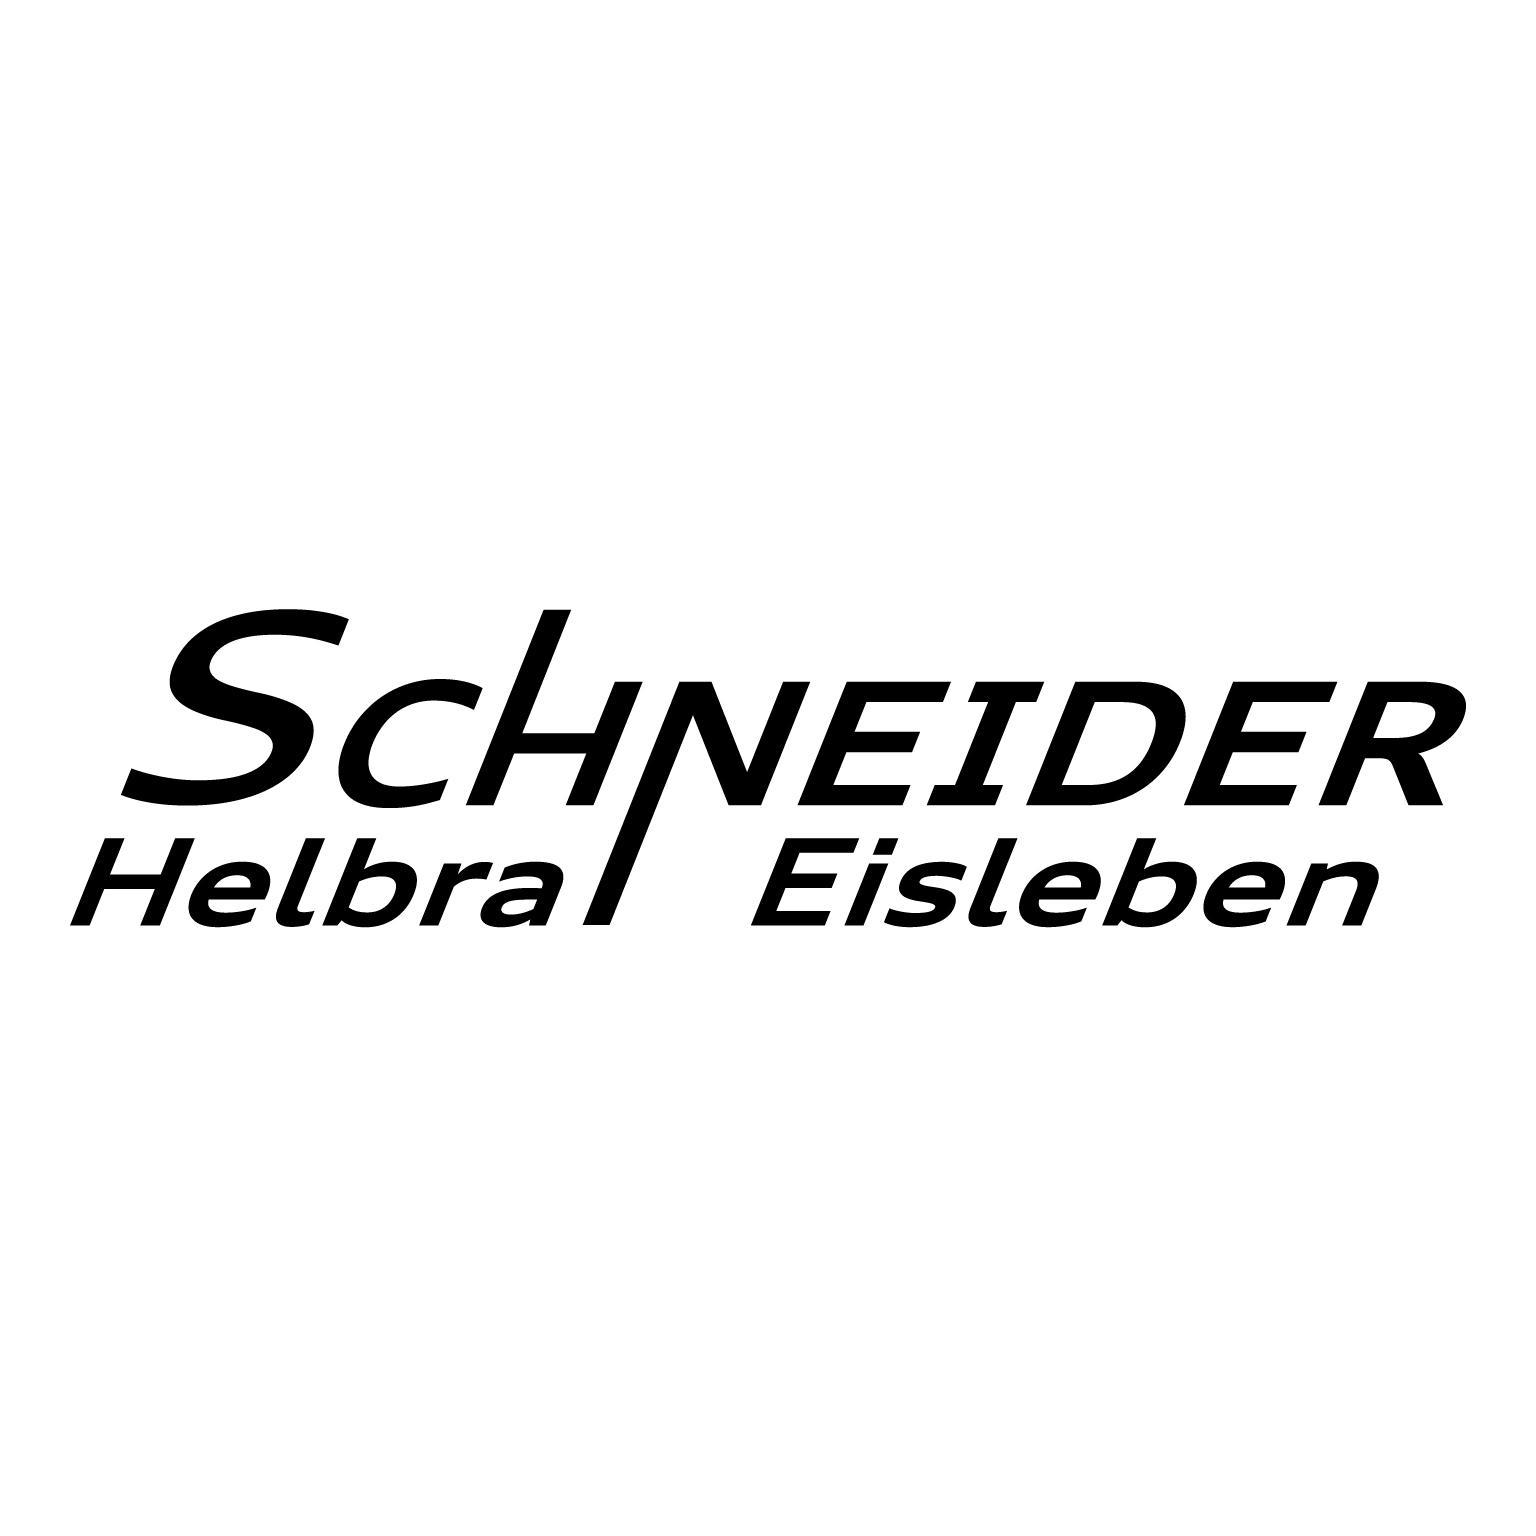 Schneider : Brand Short Description Type Here.